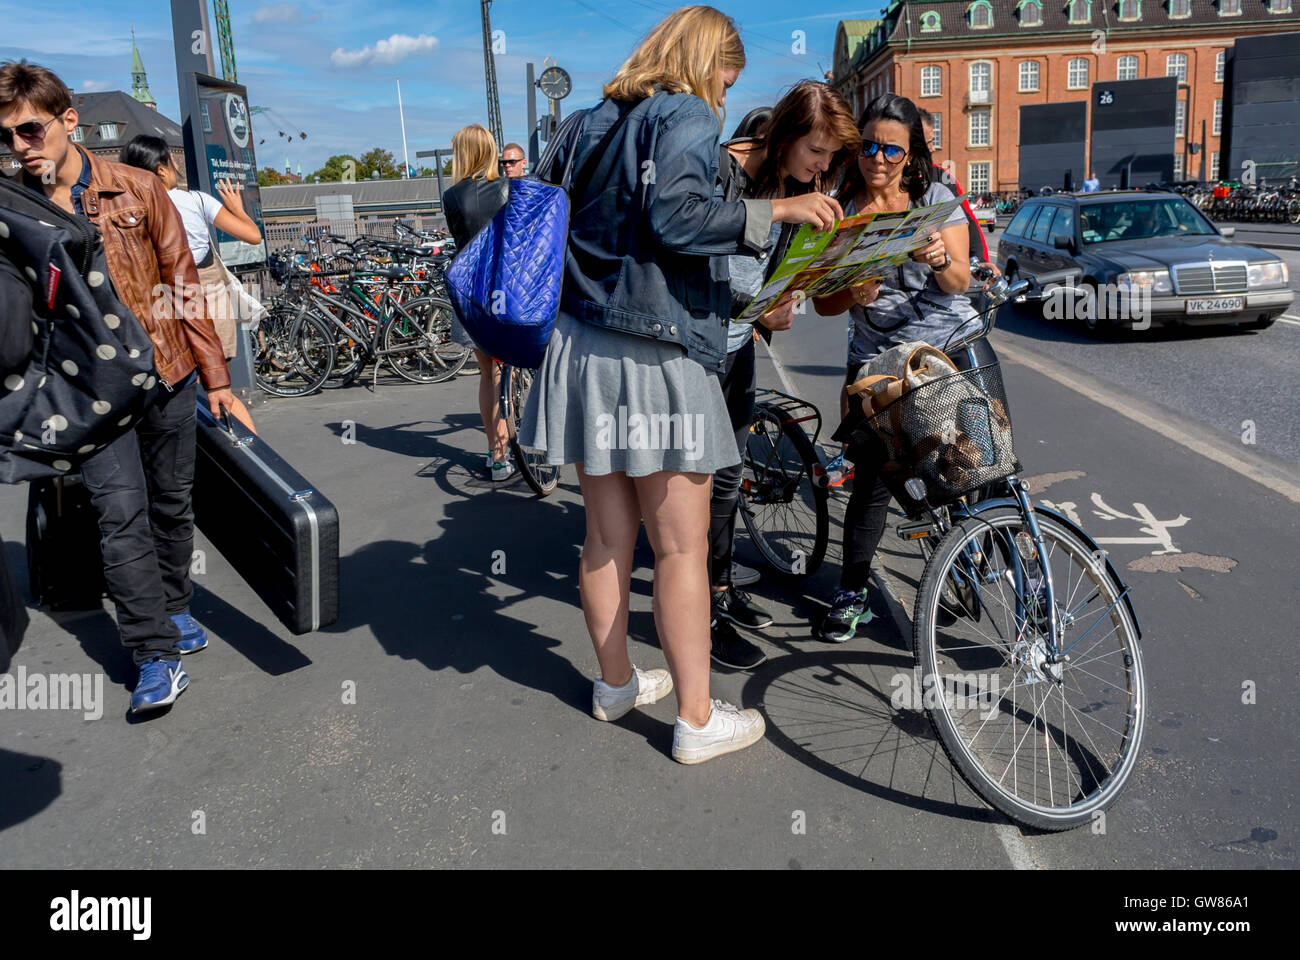 Kopenhagen, Dänemark, dänische Frauen, die Fahrräder im Freien nutzen, Straßenszenen, Hauptbahnhof, Radfahren im Freien, nachhaltiges Reisen, Die Leute versammelten sich auf den Straßen. Stockfoto